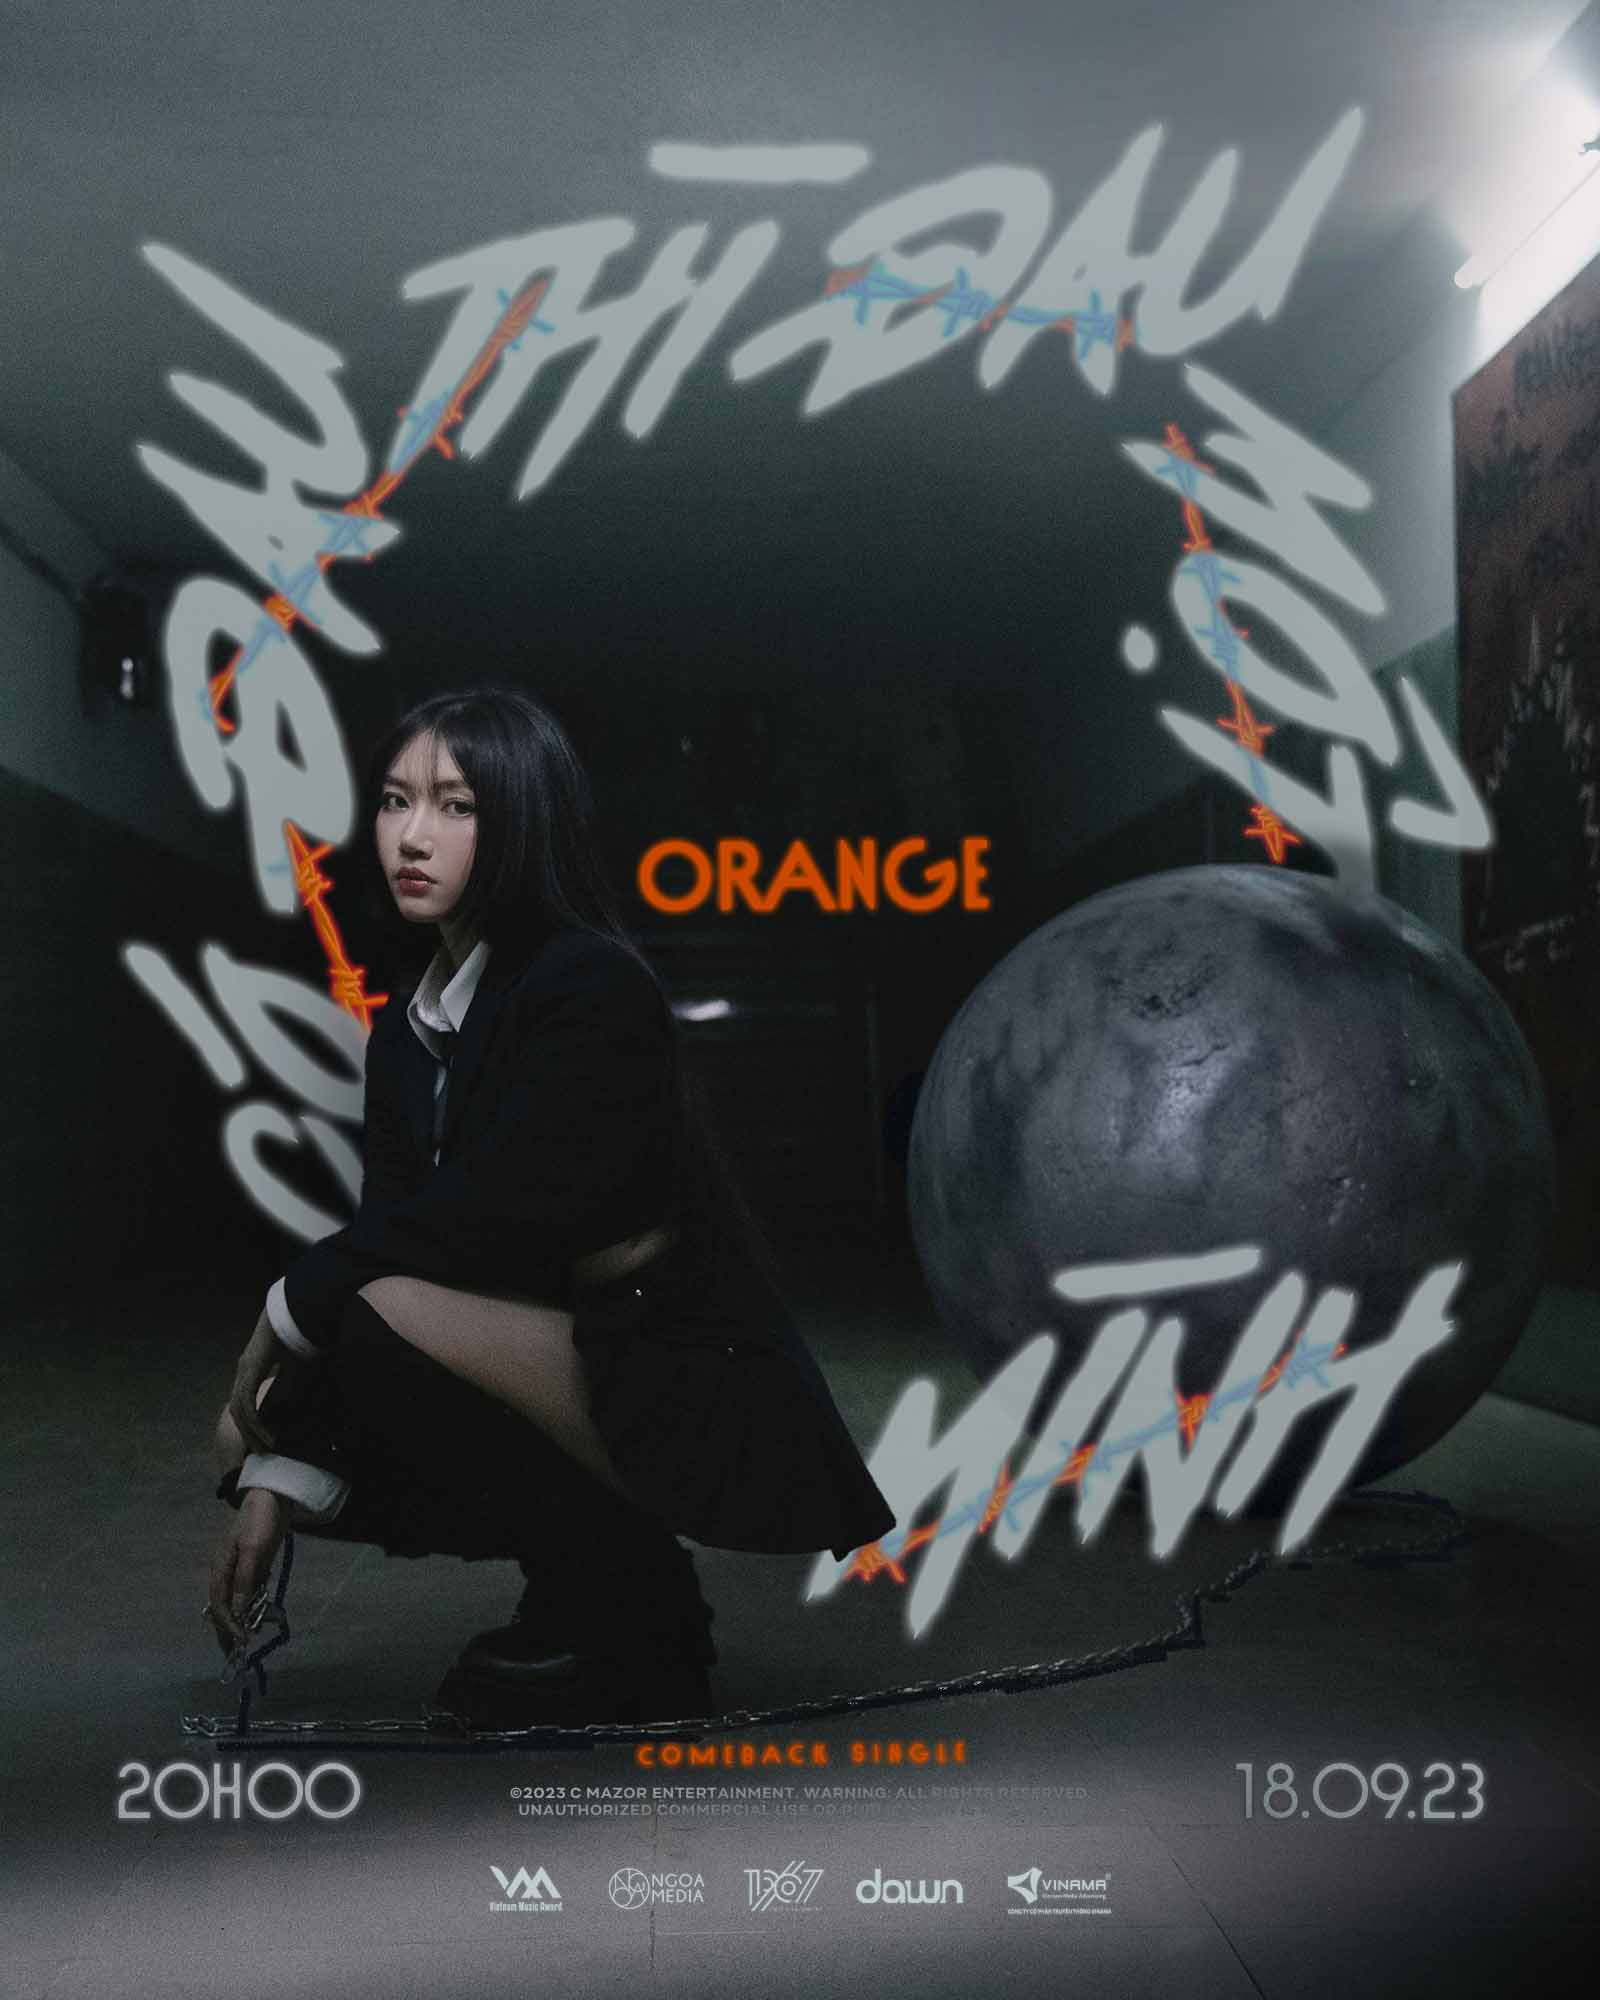 Minisite này của Orange cũng sẽ bao gồm toàn bộ thông tin độc quyền về dự án âm nhạc của cô gồm những nội dung như timeline, một số hình ảnh tranh vẽ sẽ xuất hiện trong album lần này.